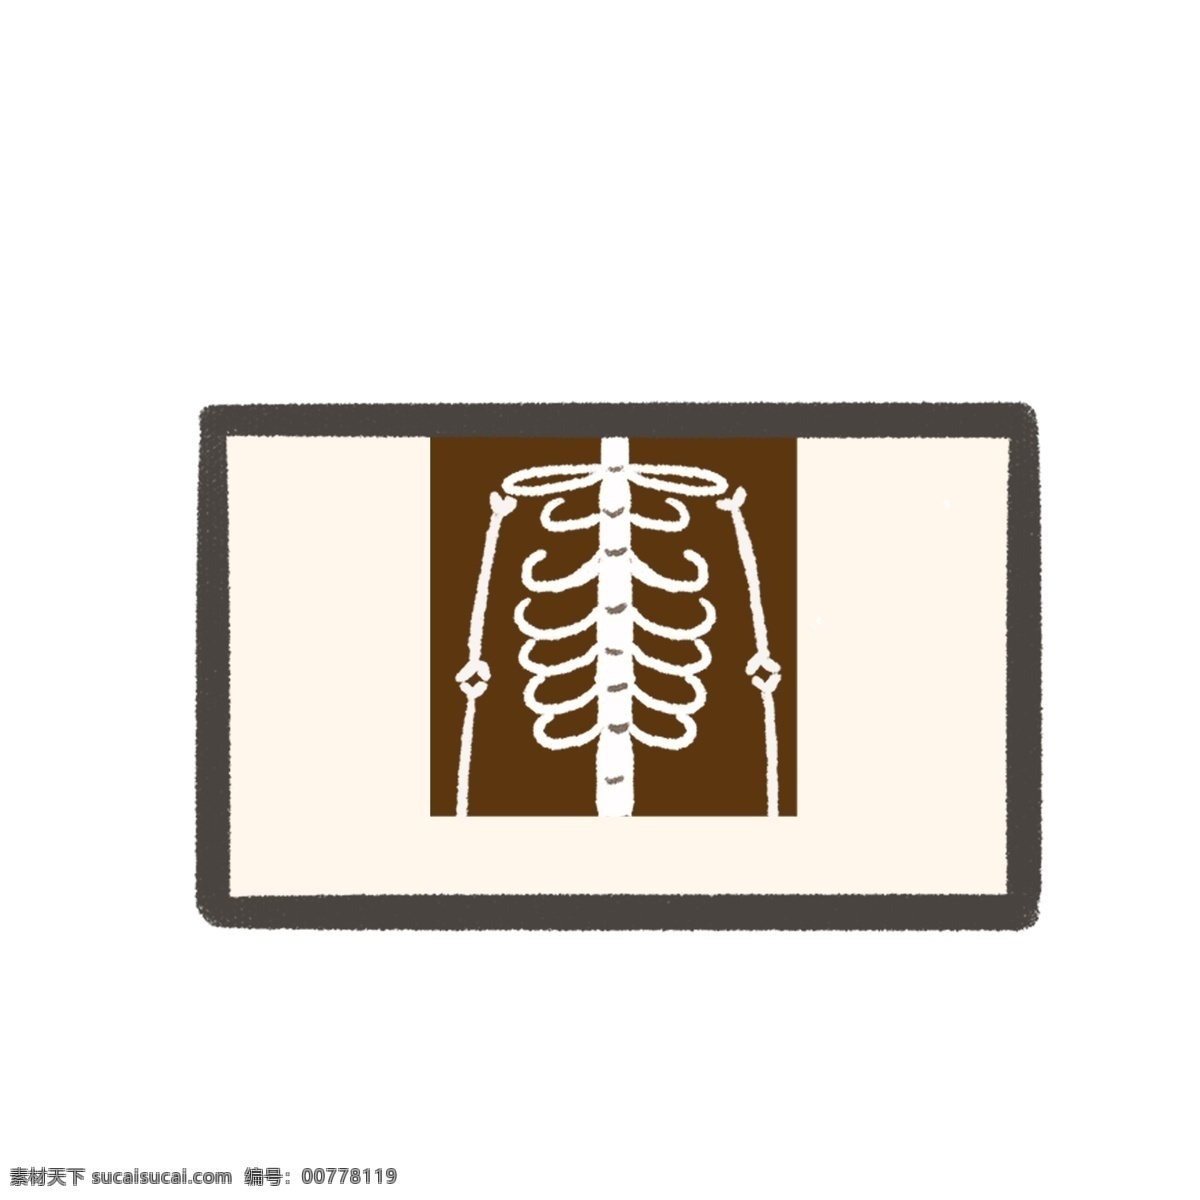 一个 人物 骨骼 免 抠 图 电脑 电子产品 医疗 医院 免抠图 医学 教课资料 胸腔骨骼 骨科